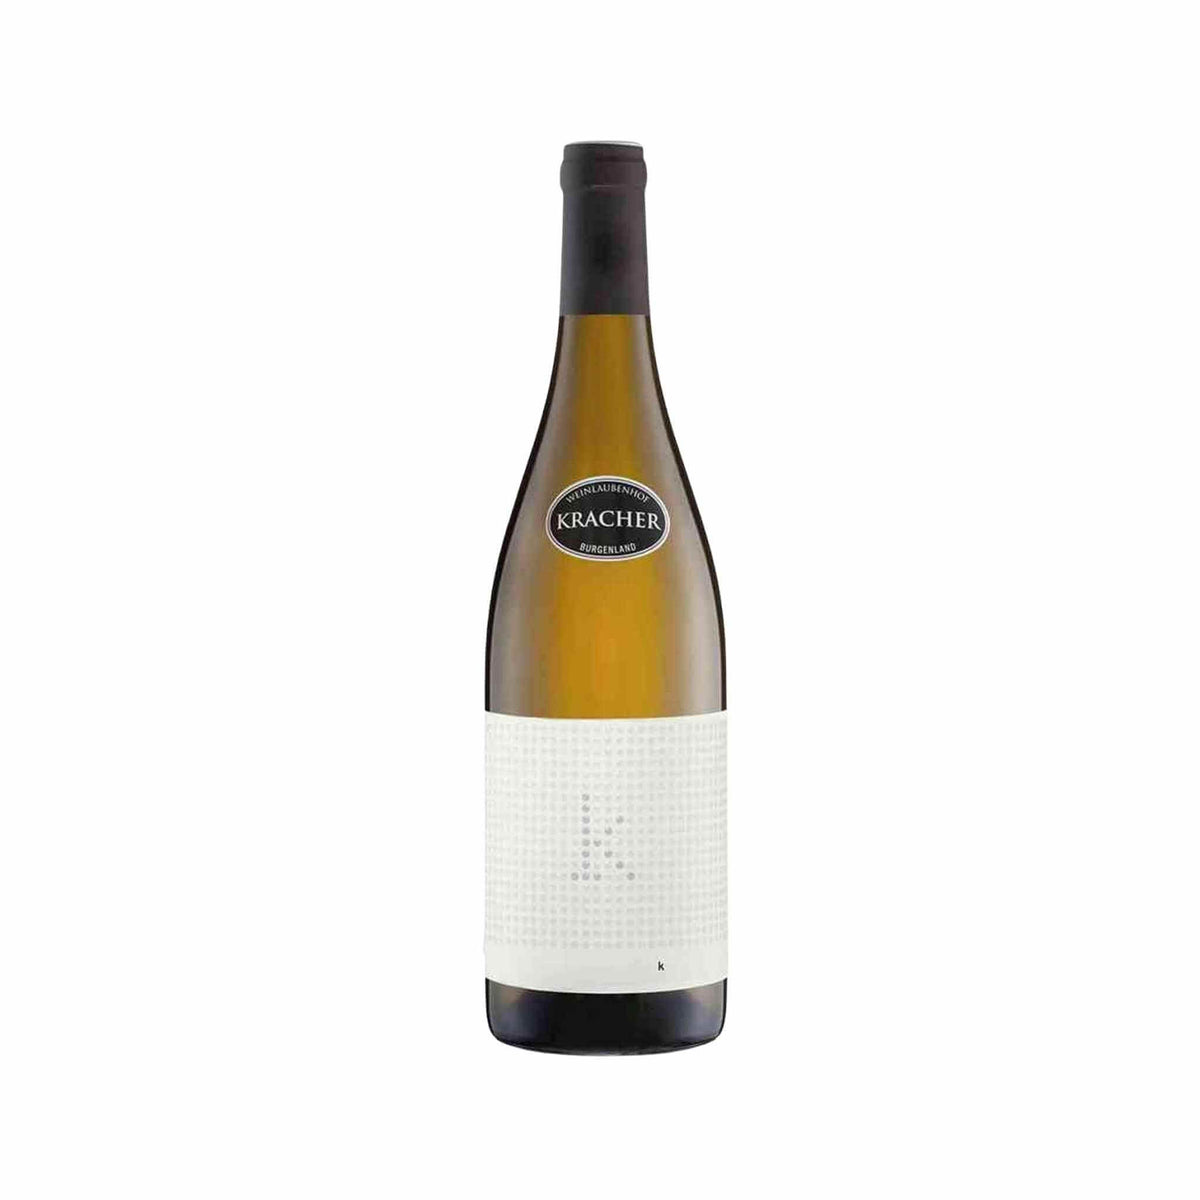 Weinlaubenhof Kracher-Weißwein-Chardonnay, Scheurebe, Welschriesling-2015 K Magnum-WINECOM